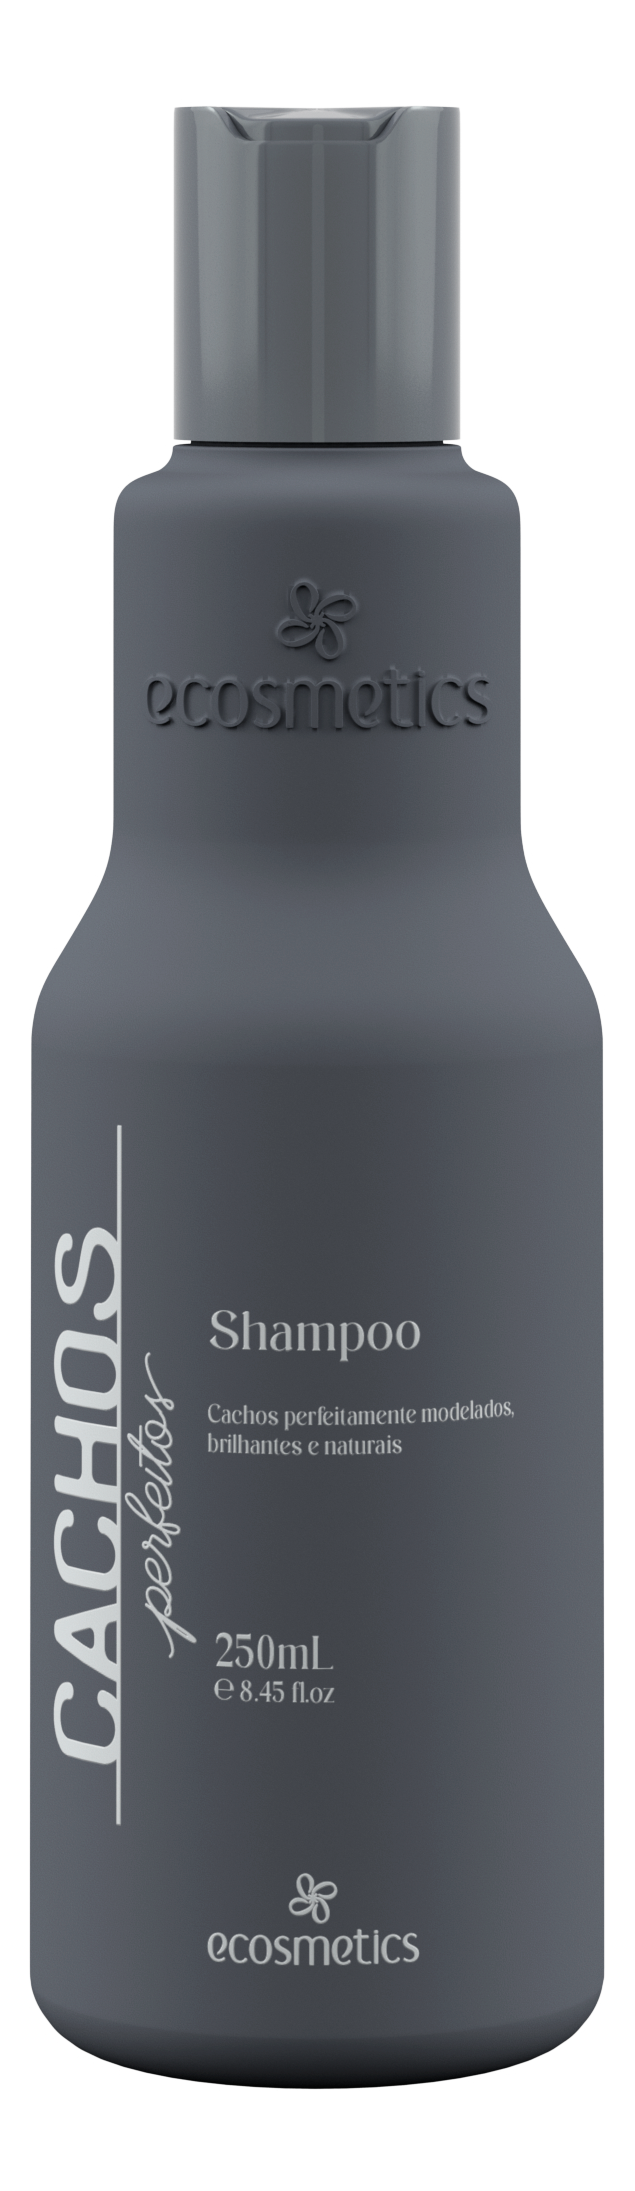 Shampoo Cachos Perfeitos (250mL)